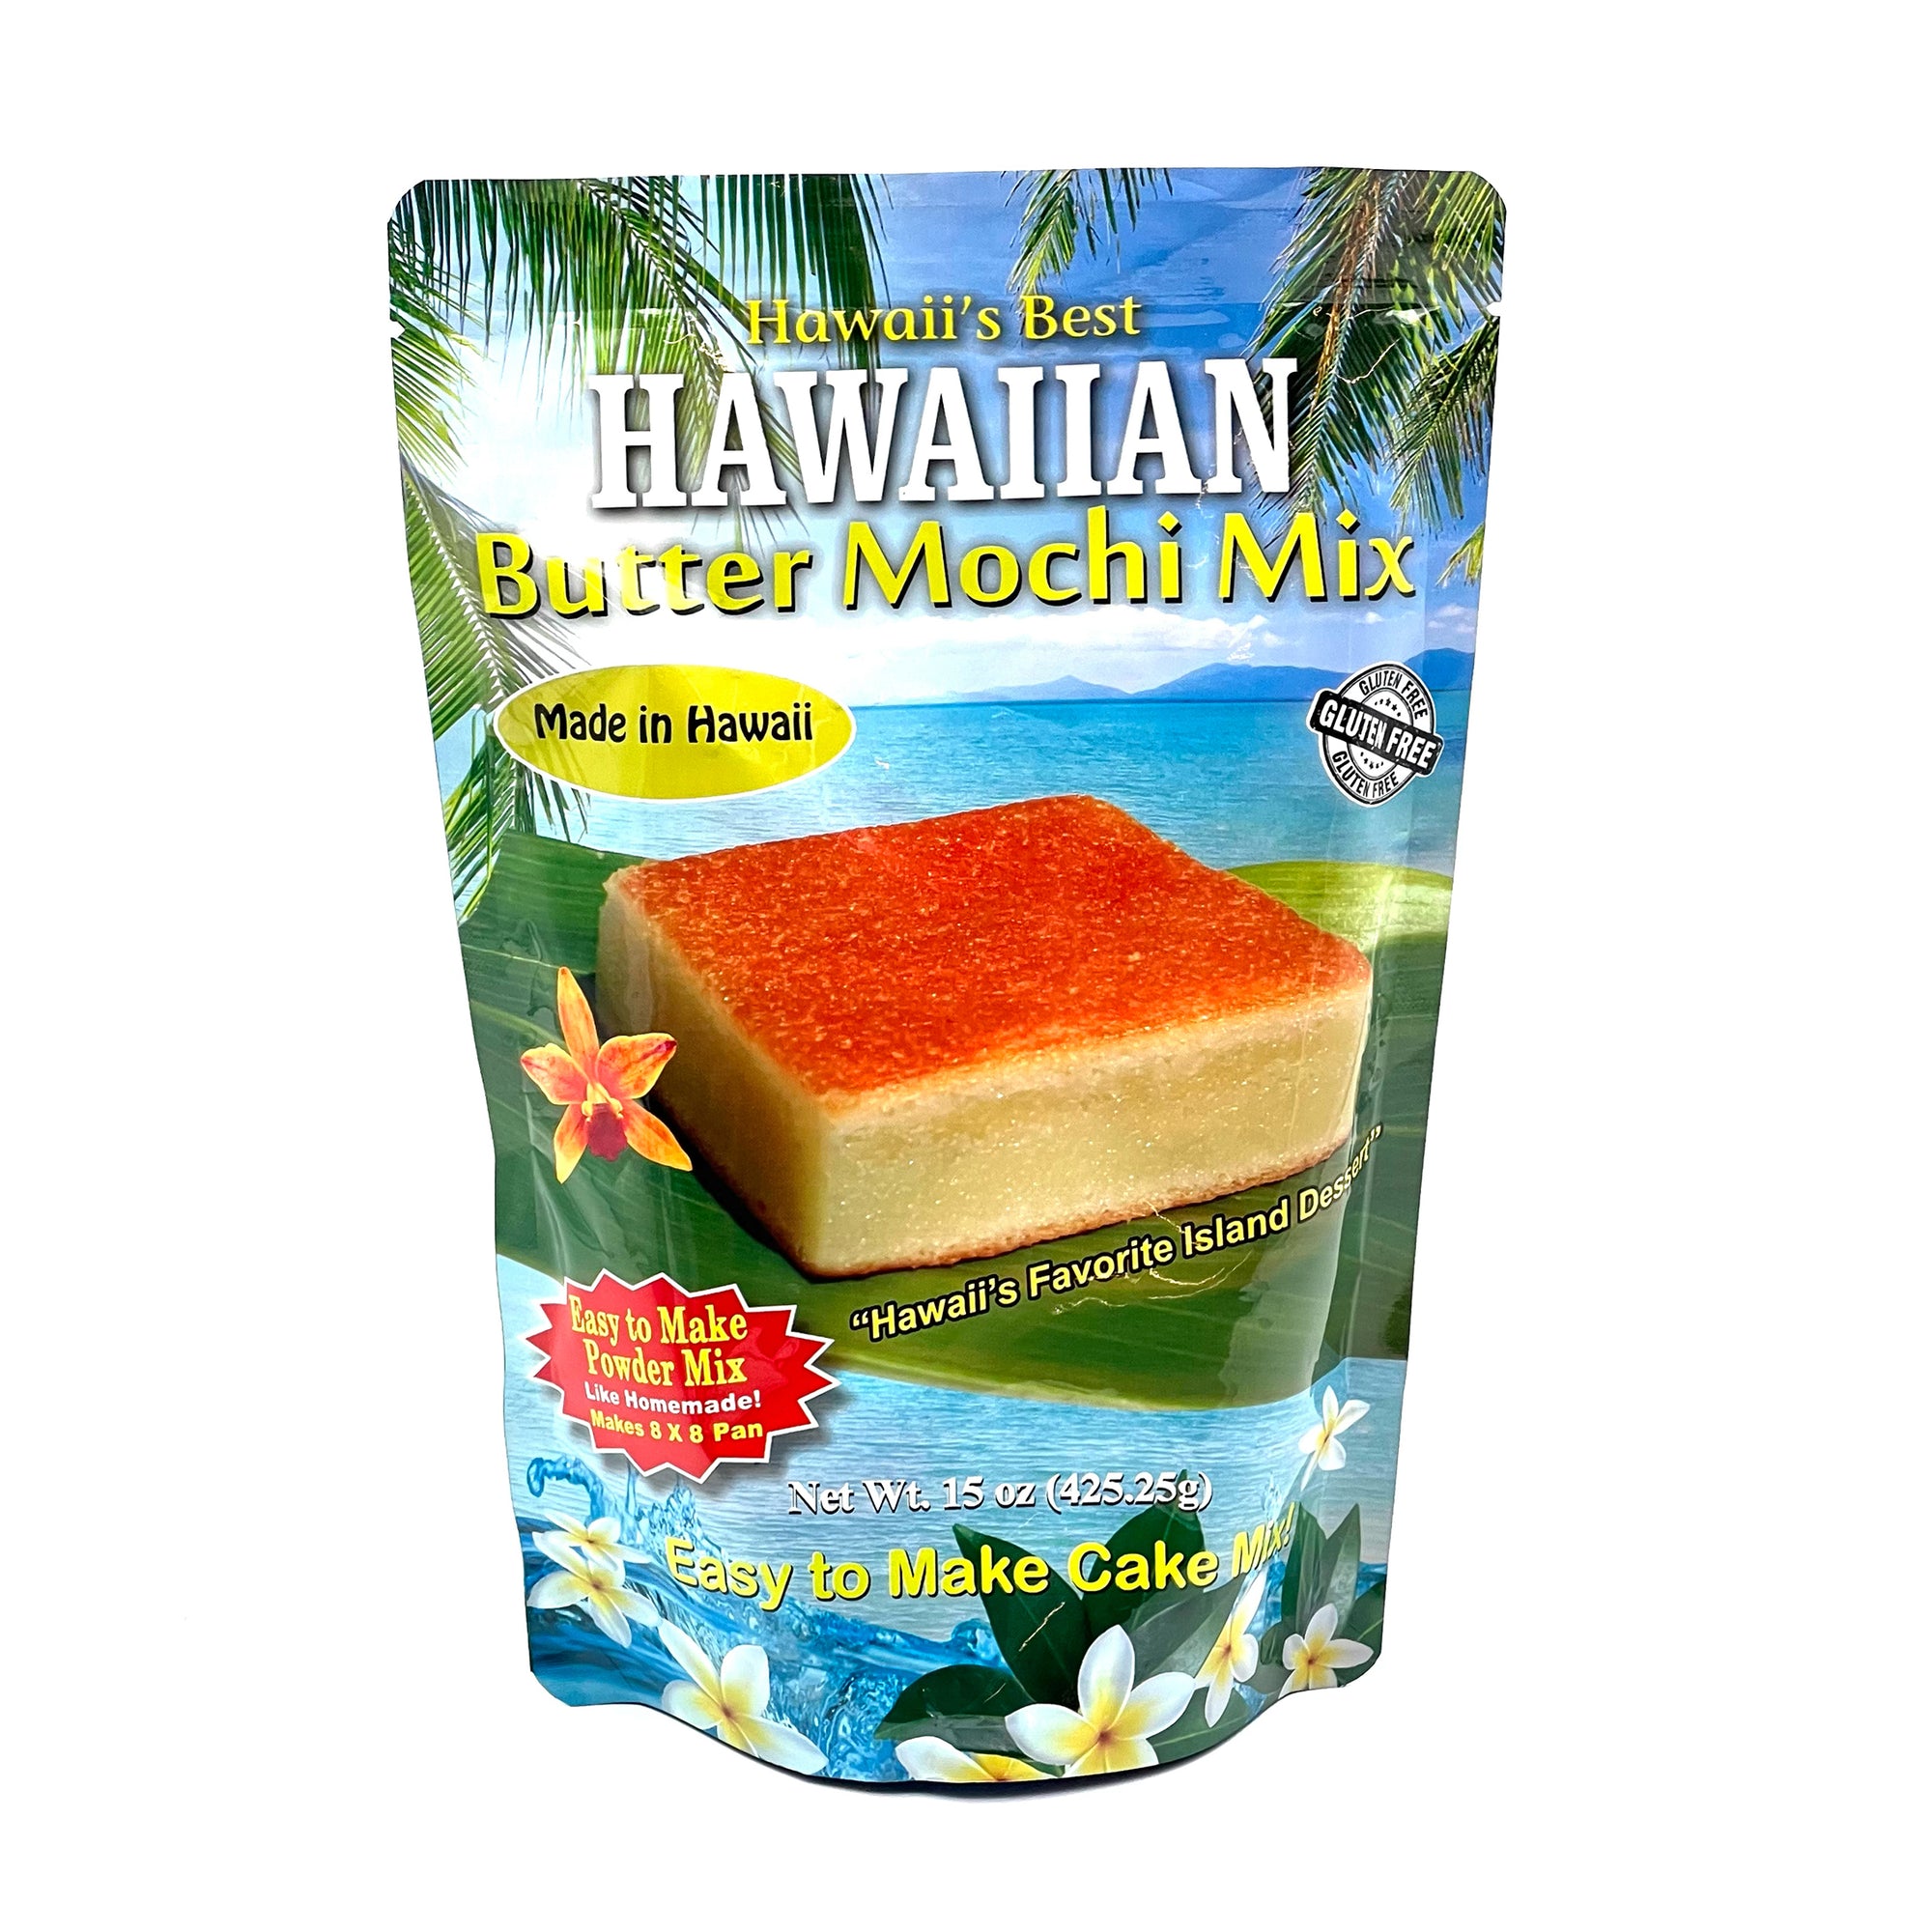 Pop-Up Mākeke - Hawaii's Best Mixes - Hawaiian Butter Mochi Mix - Fruit View